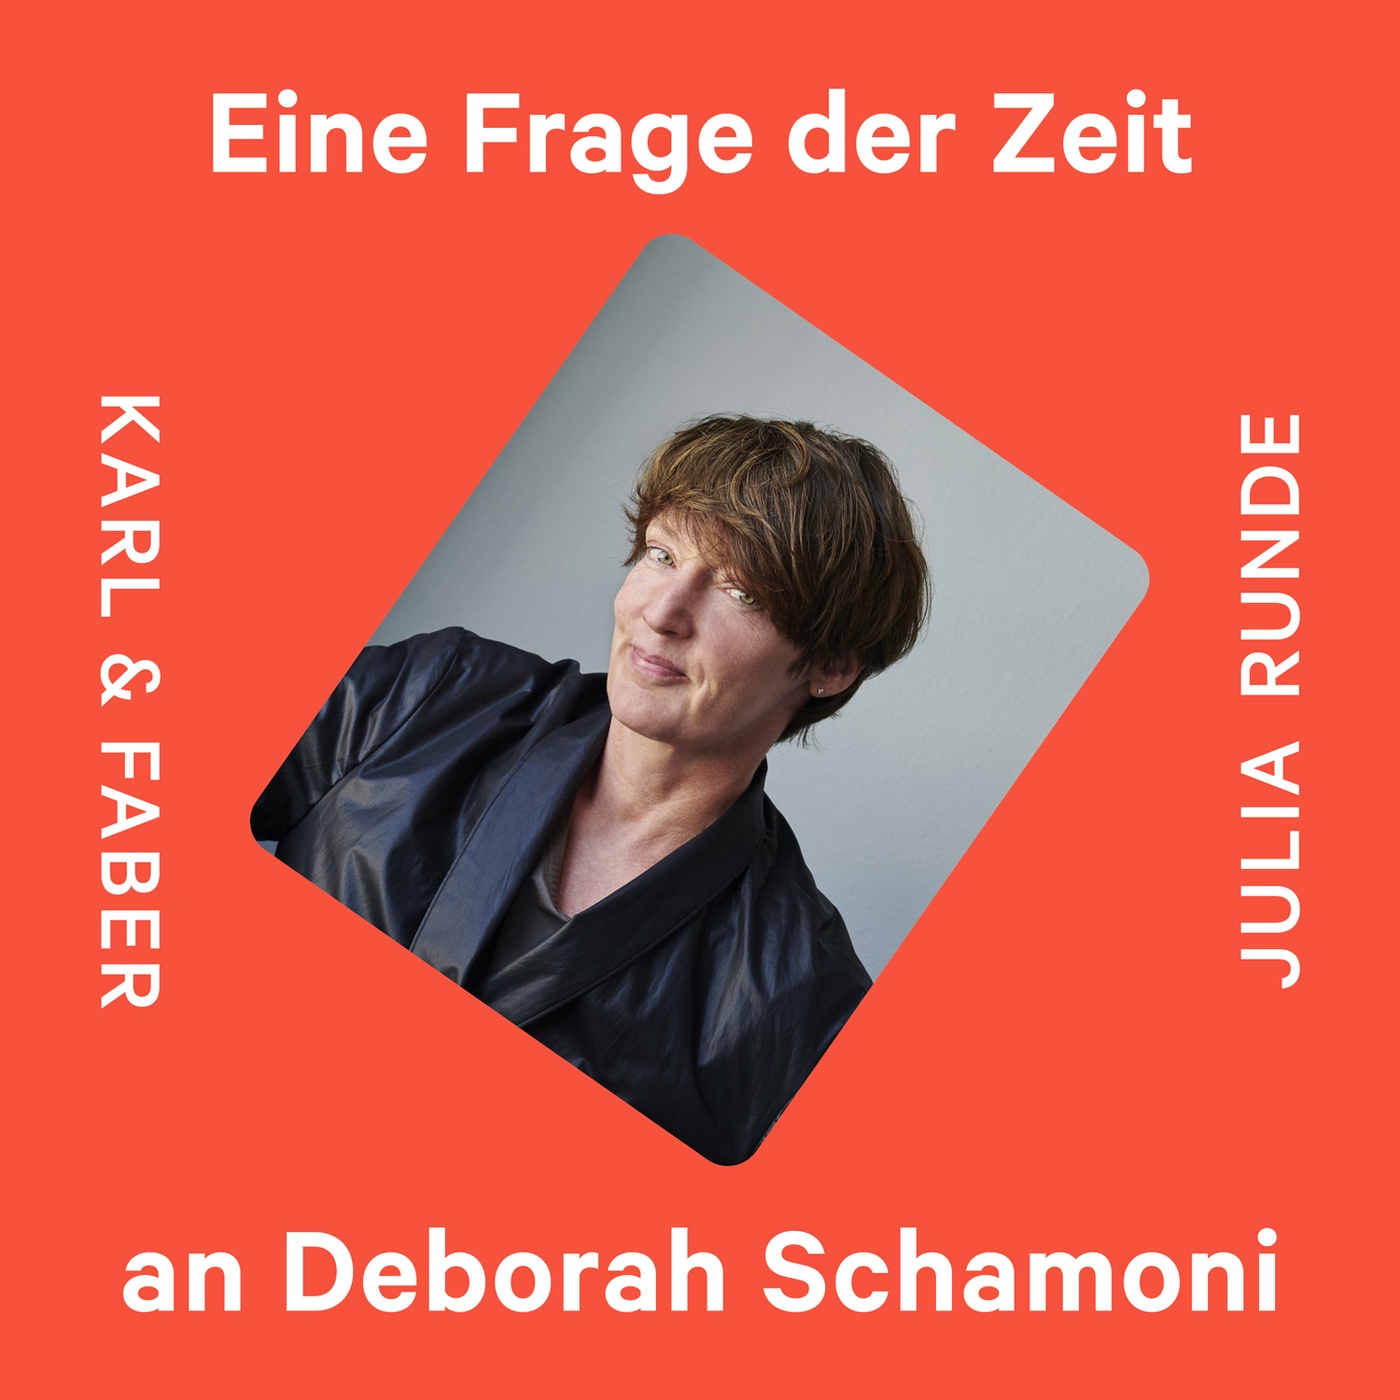 #1 Deborah Schamoni